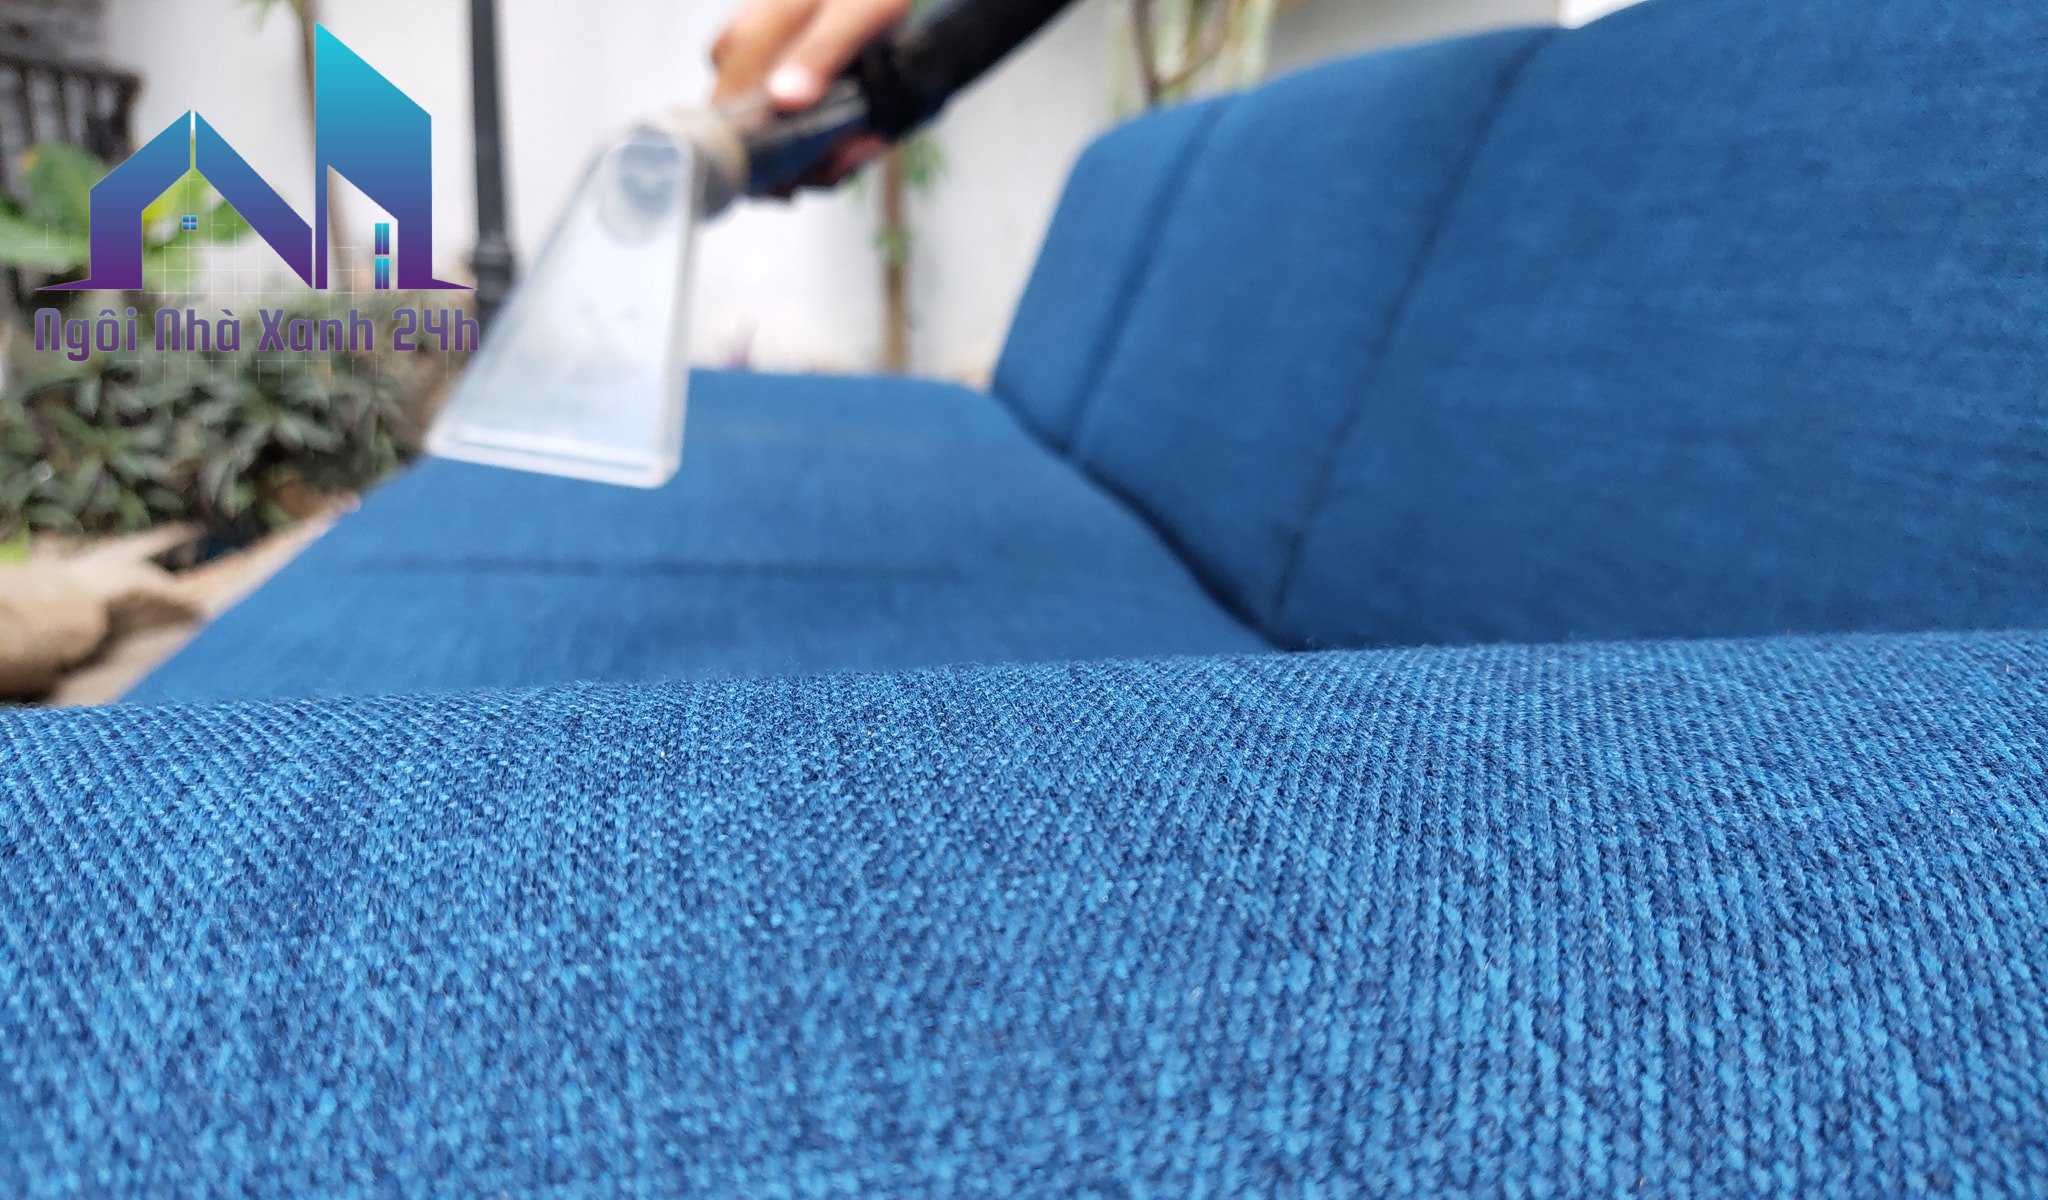 hút sạch bụi bẩn trên bề mặt ghế sofa bằng máy hút bụi chuyên dụng